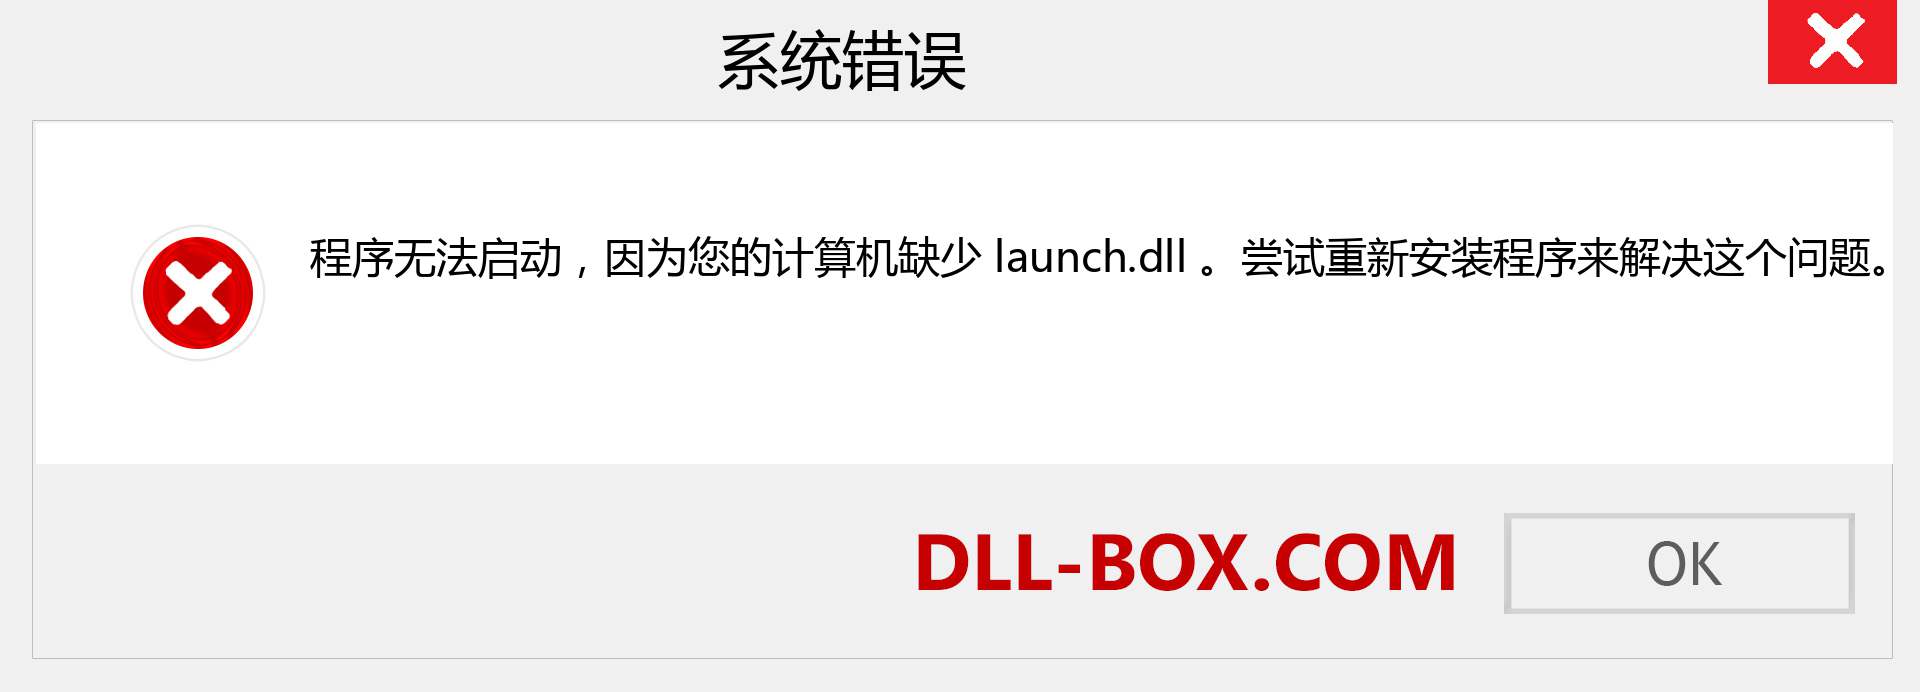 launch.dll 文件丢失？。 适用于 Windows 7、8、10 的下载 - 修复 Windows、照片、图像上的 launch dll 丢失错误